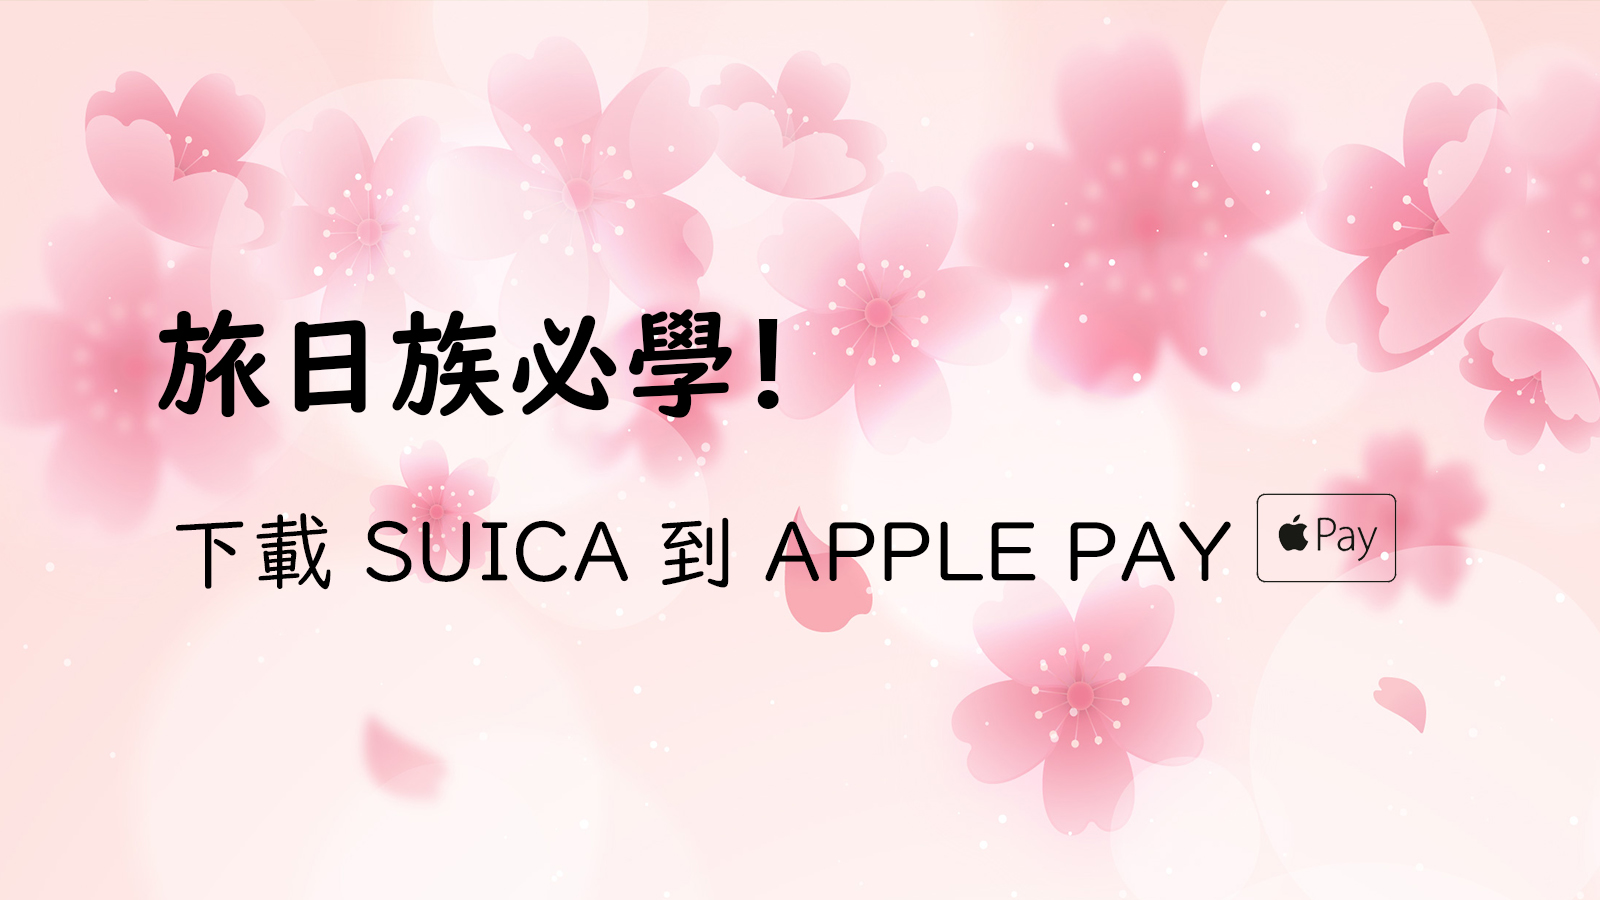 教學 如何新申請 找回apple Pay 中記名 已使用的日本suica 卡 悠小愷の3c Blog